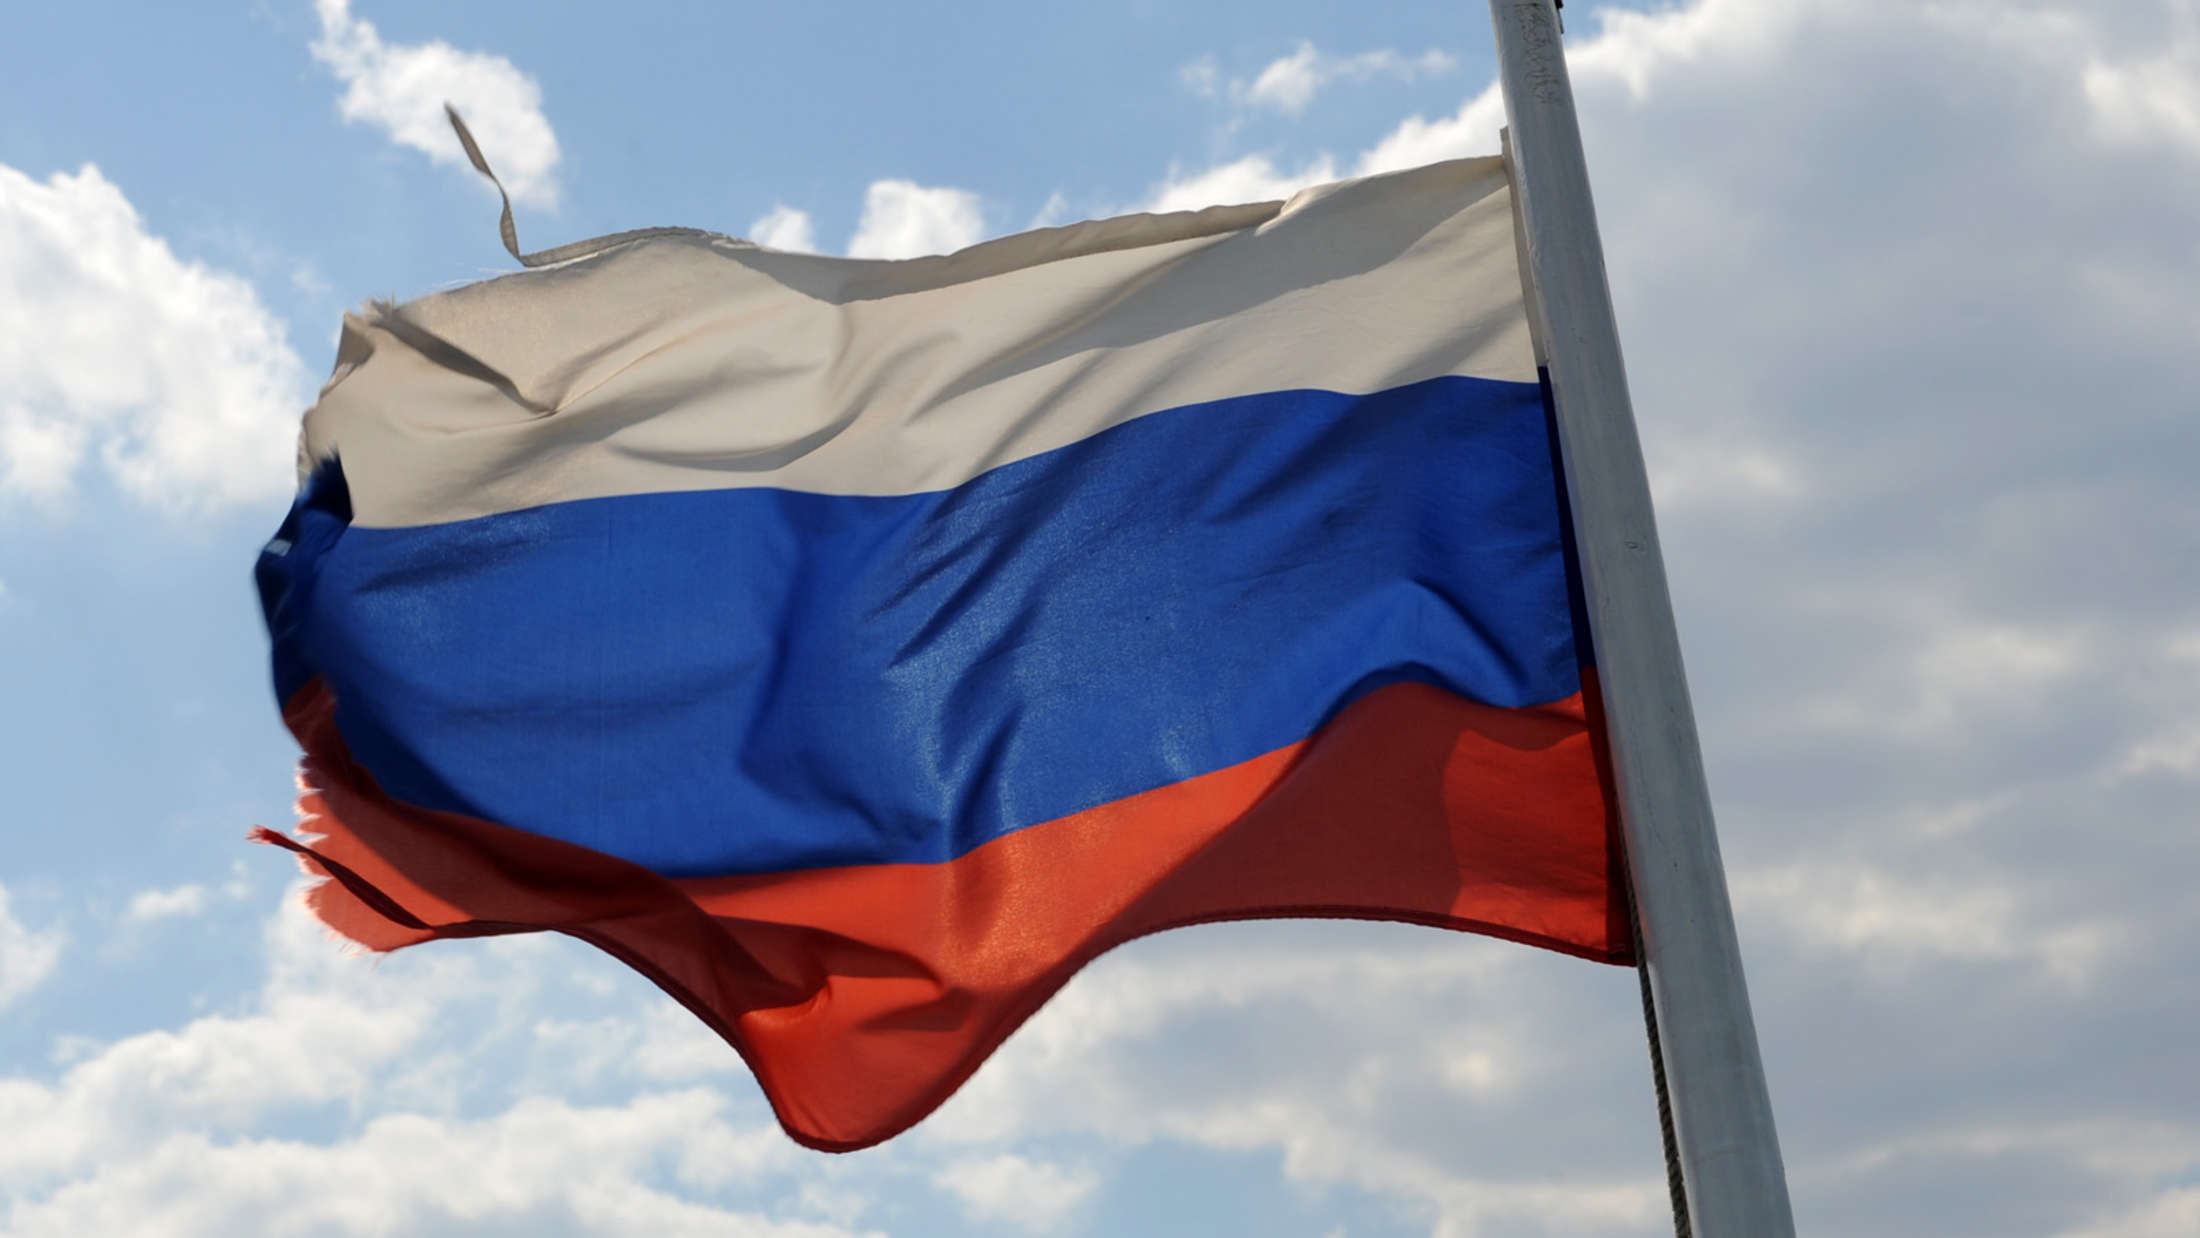 Администрация города выделила 67 тысяч рублей на флаги